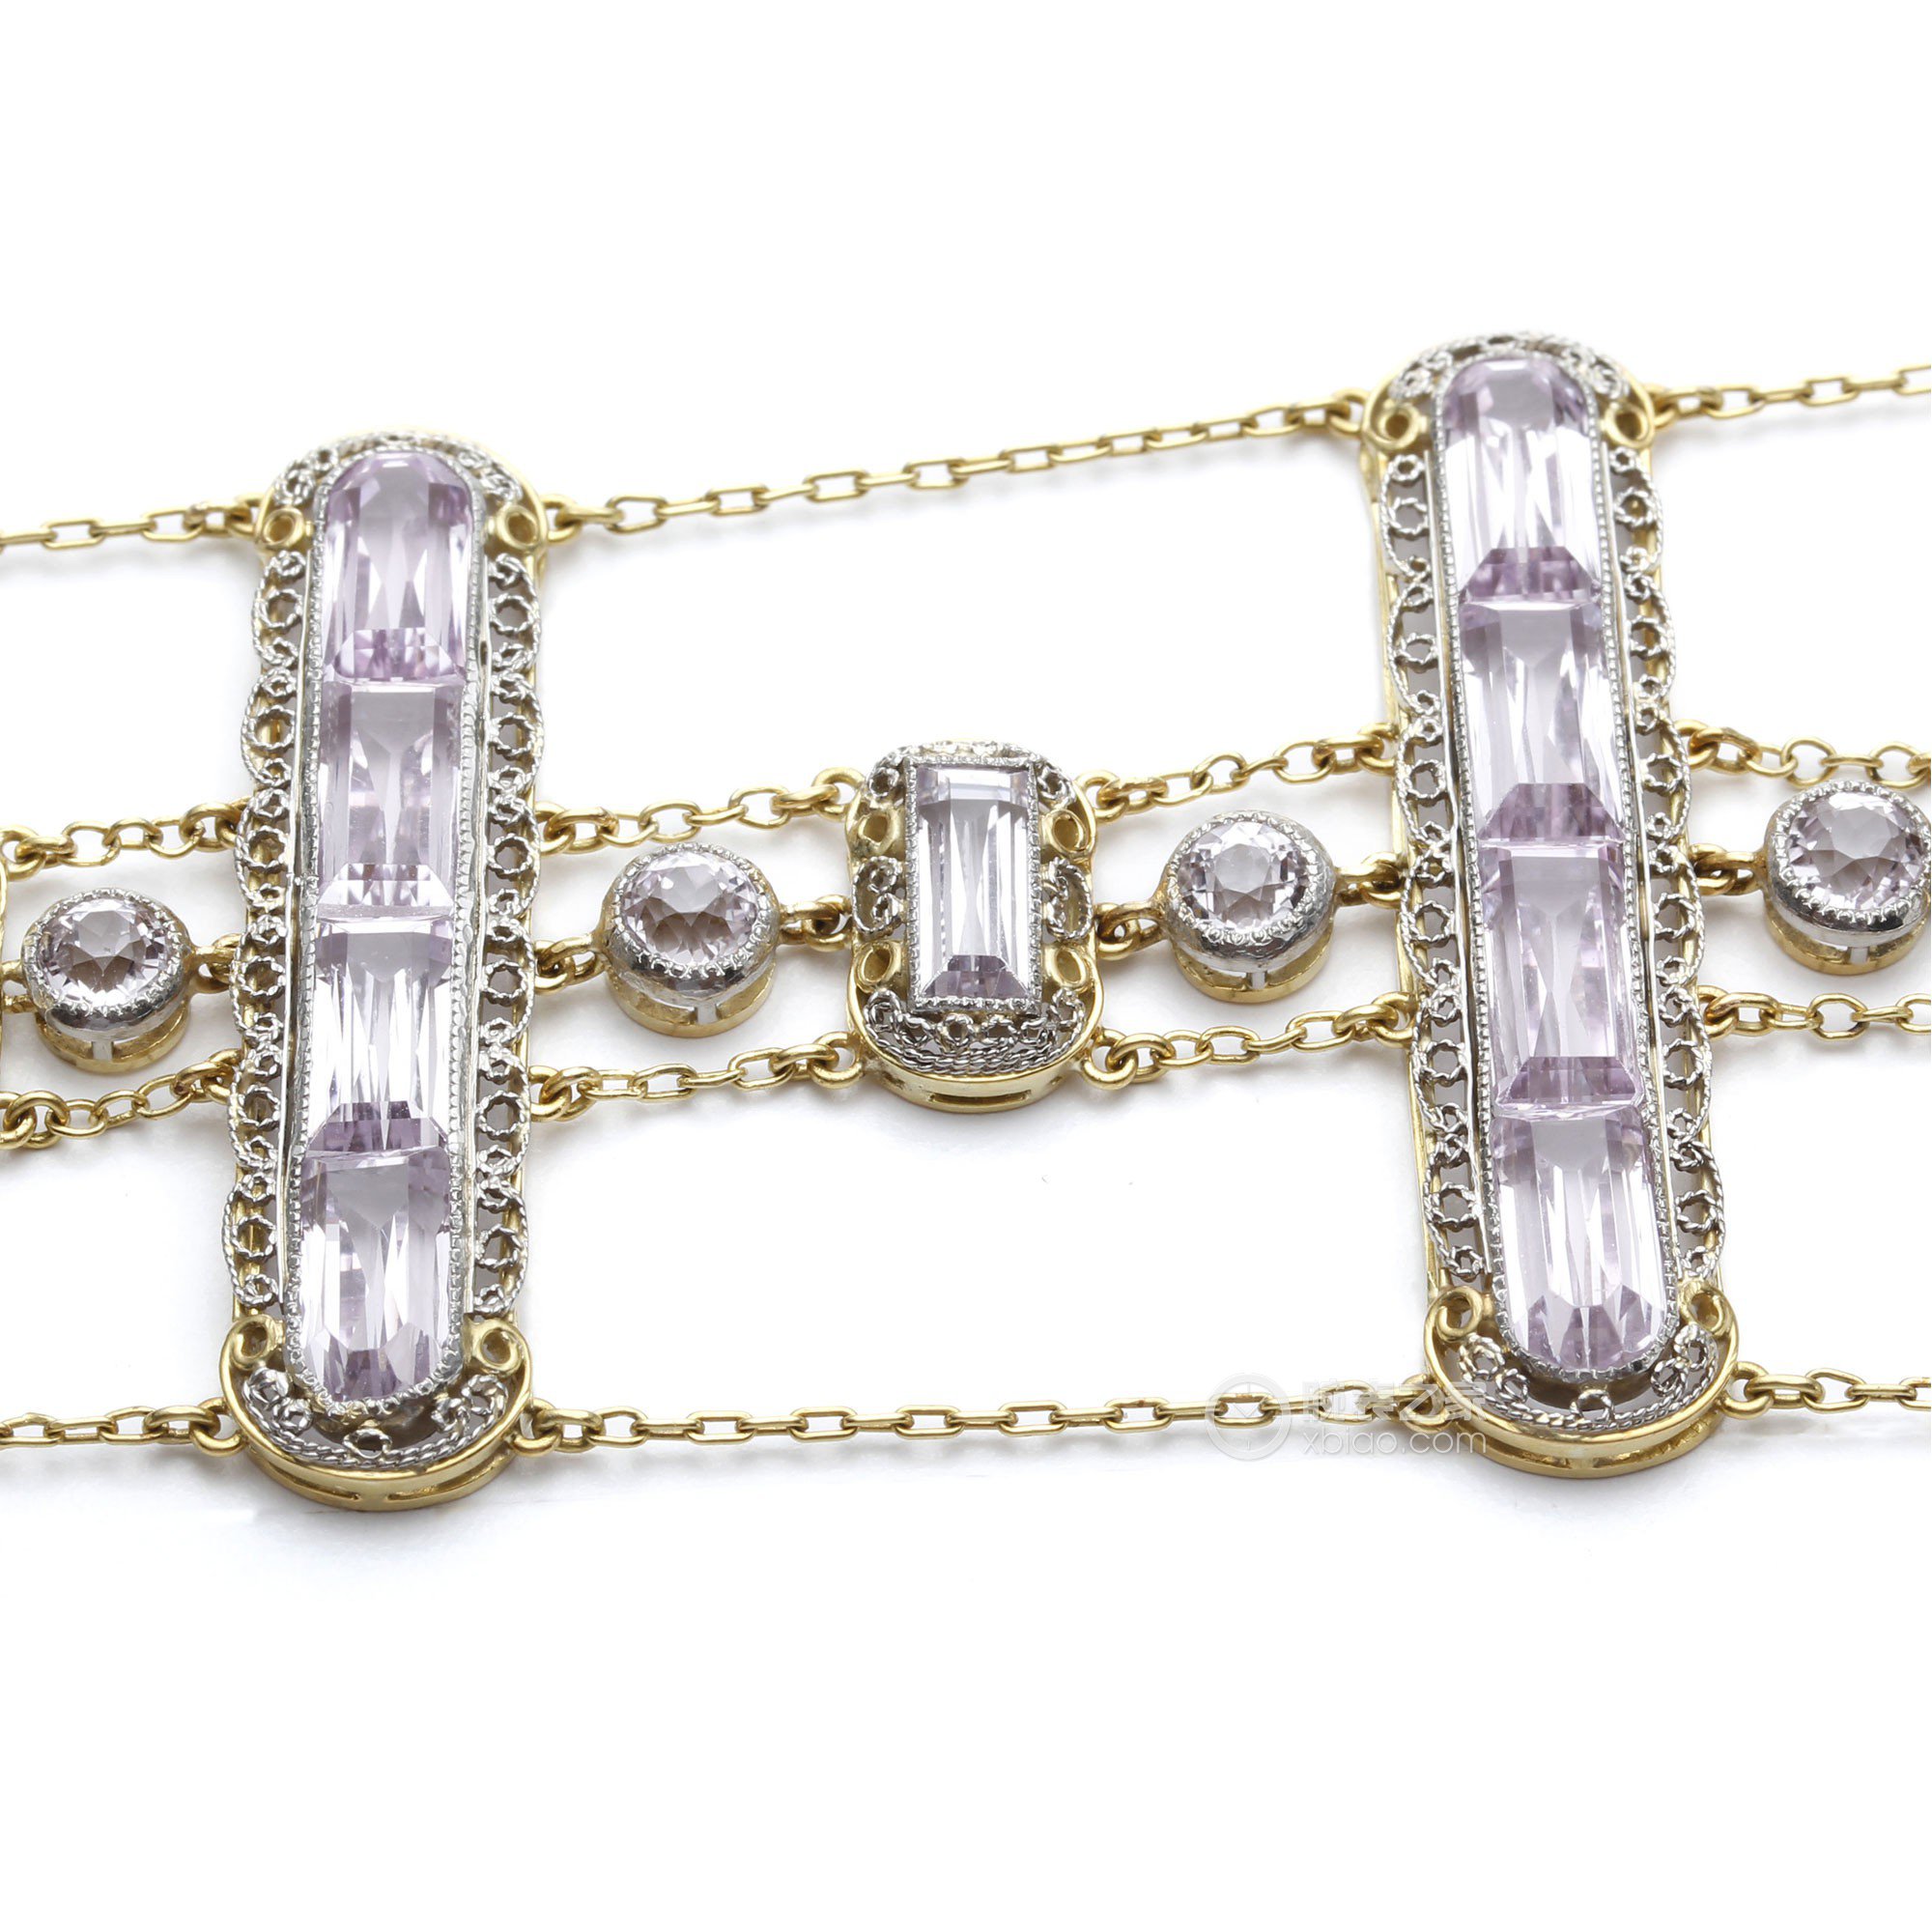 蒂芙尼古董珍藏18K黄金和铂金镶嵌紫锂辉石项链项链